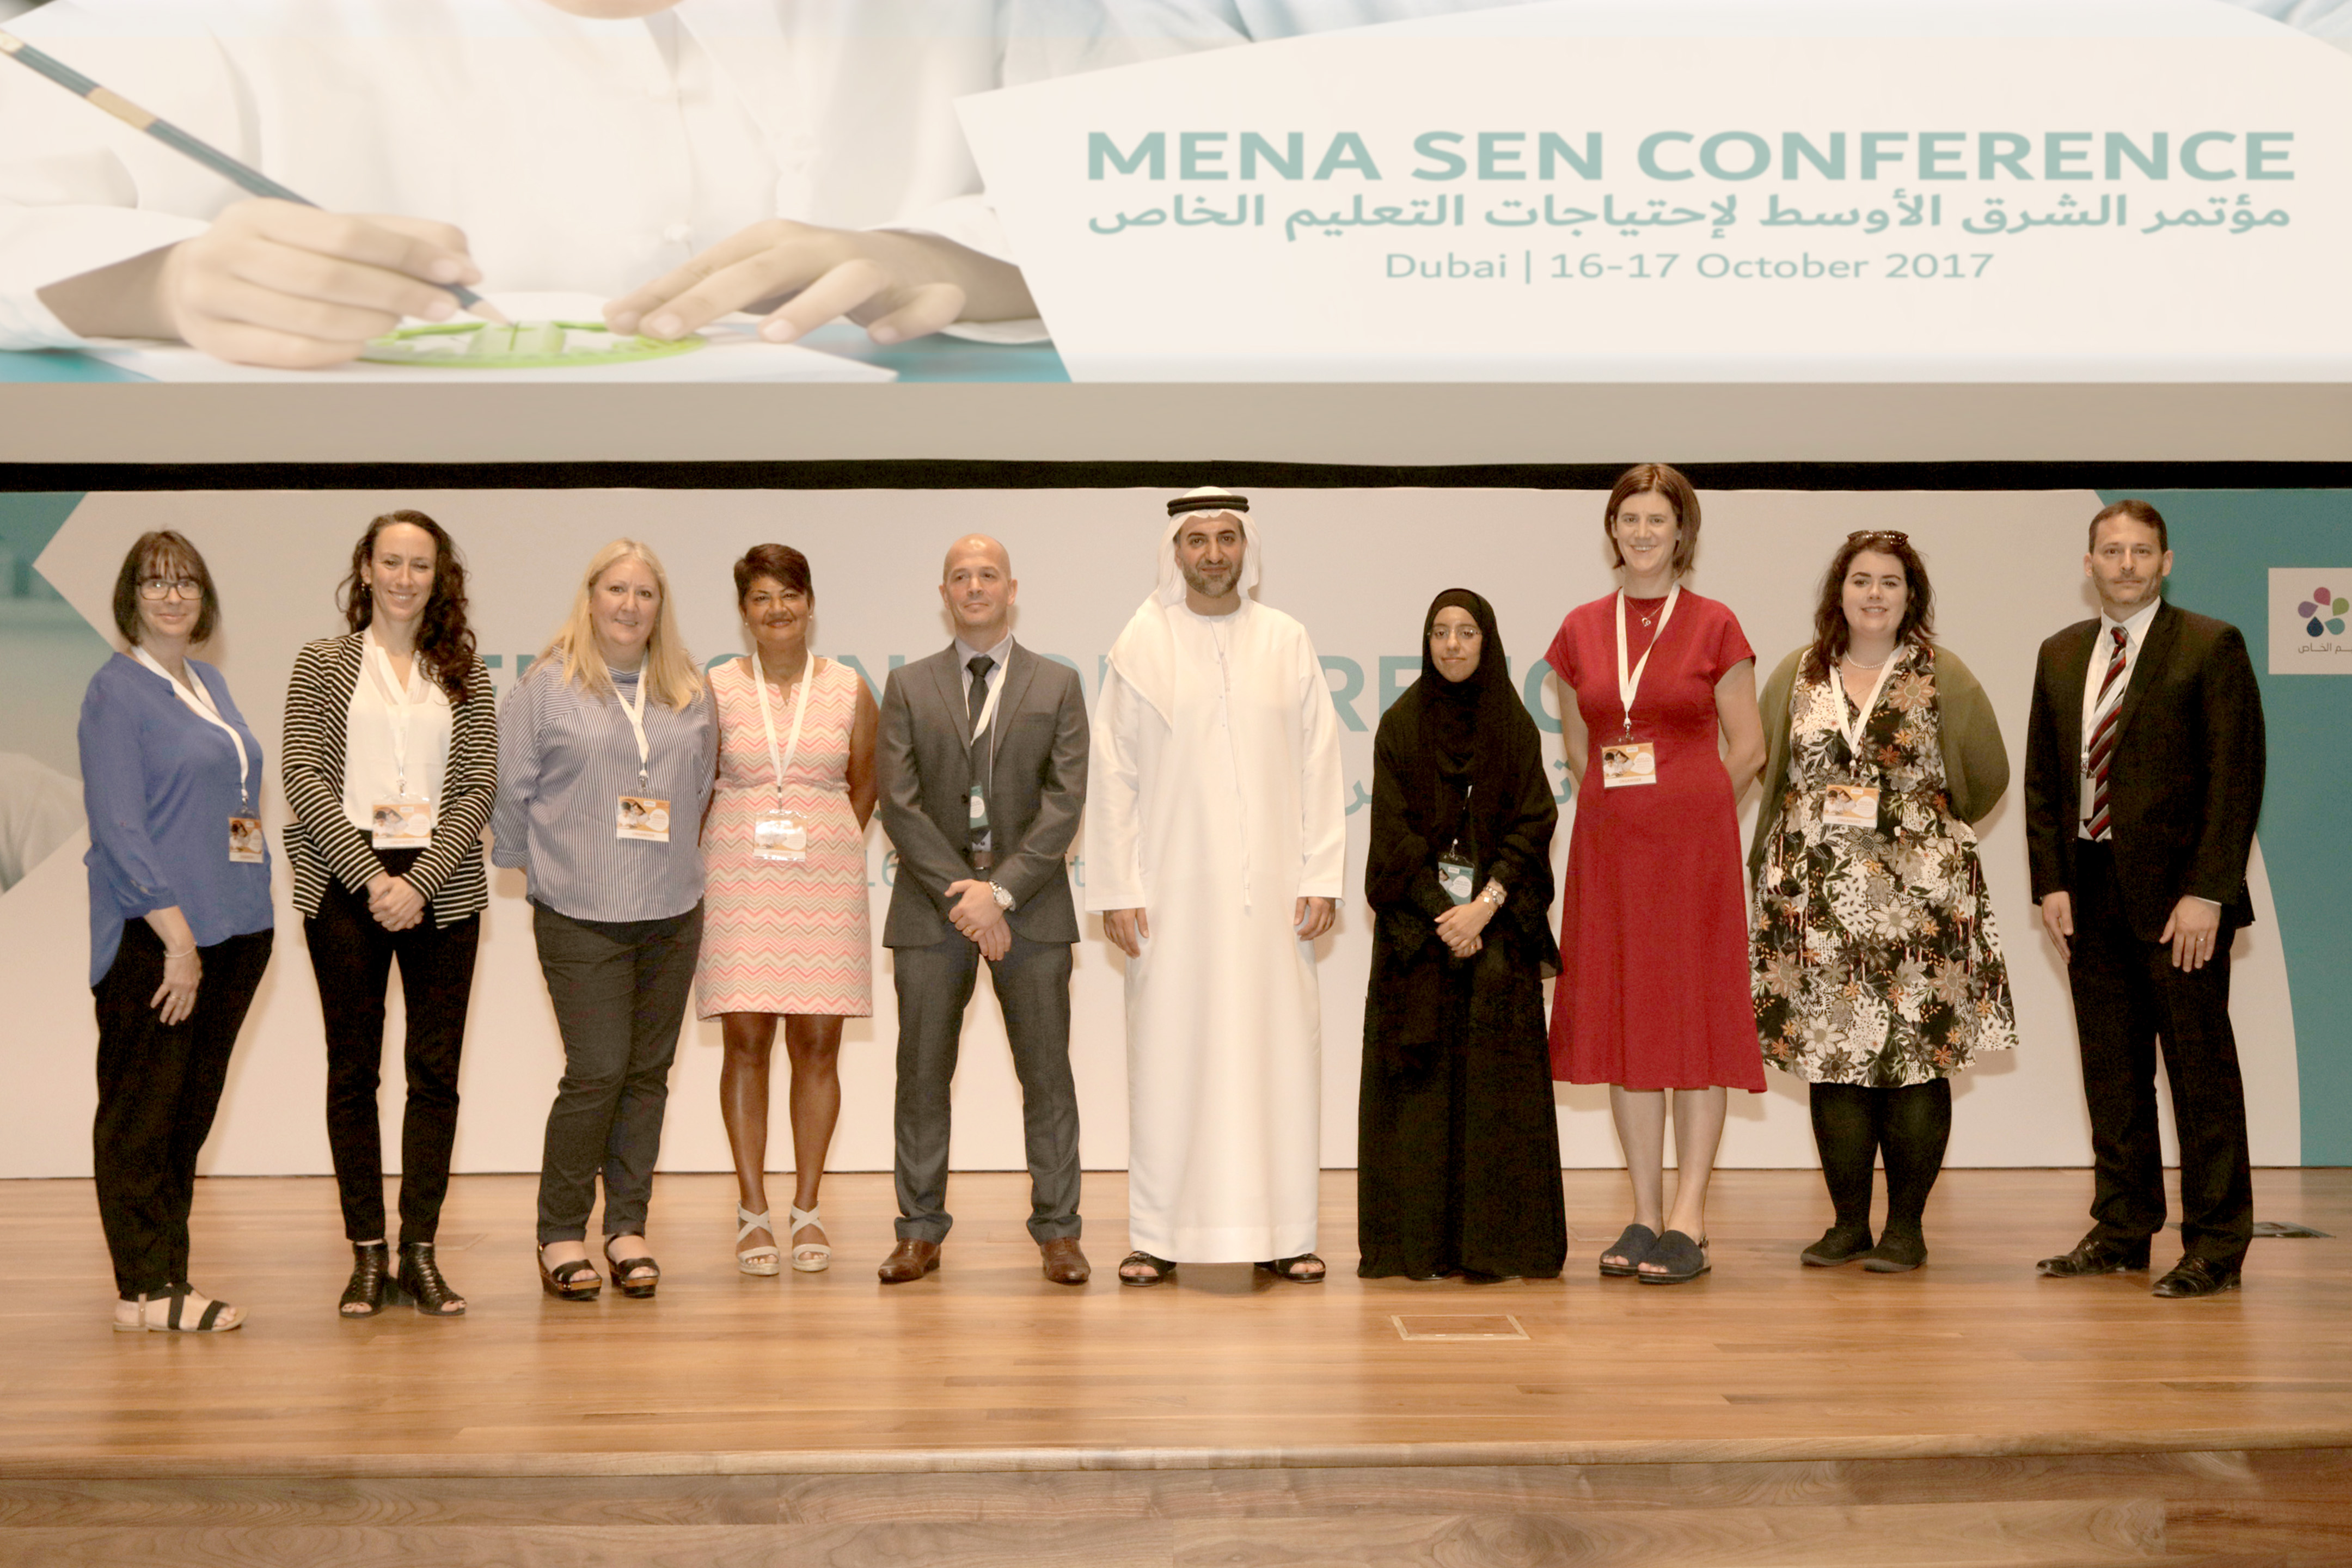 مؤسسة الجليلة تستضيف مؤتمر الشرق الأوسط لاحتياجات التعليم الخاص السنوي الثاني بالشراكة مع شبكة دبي لاحتياجات التعليم الخاص